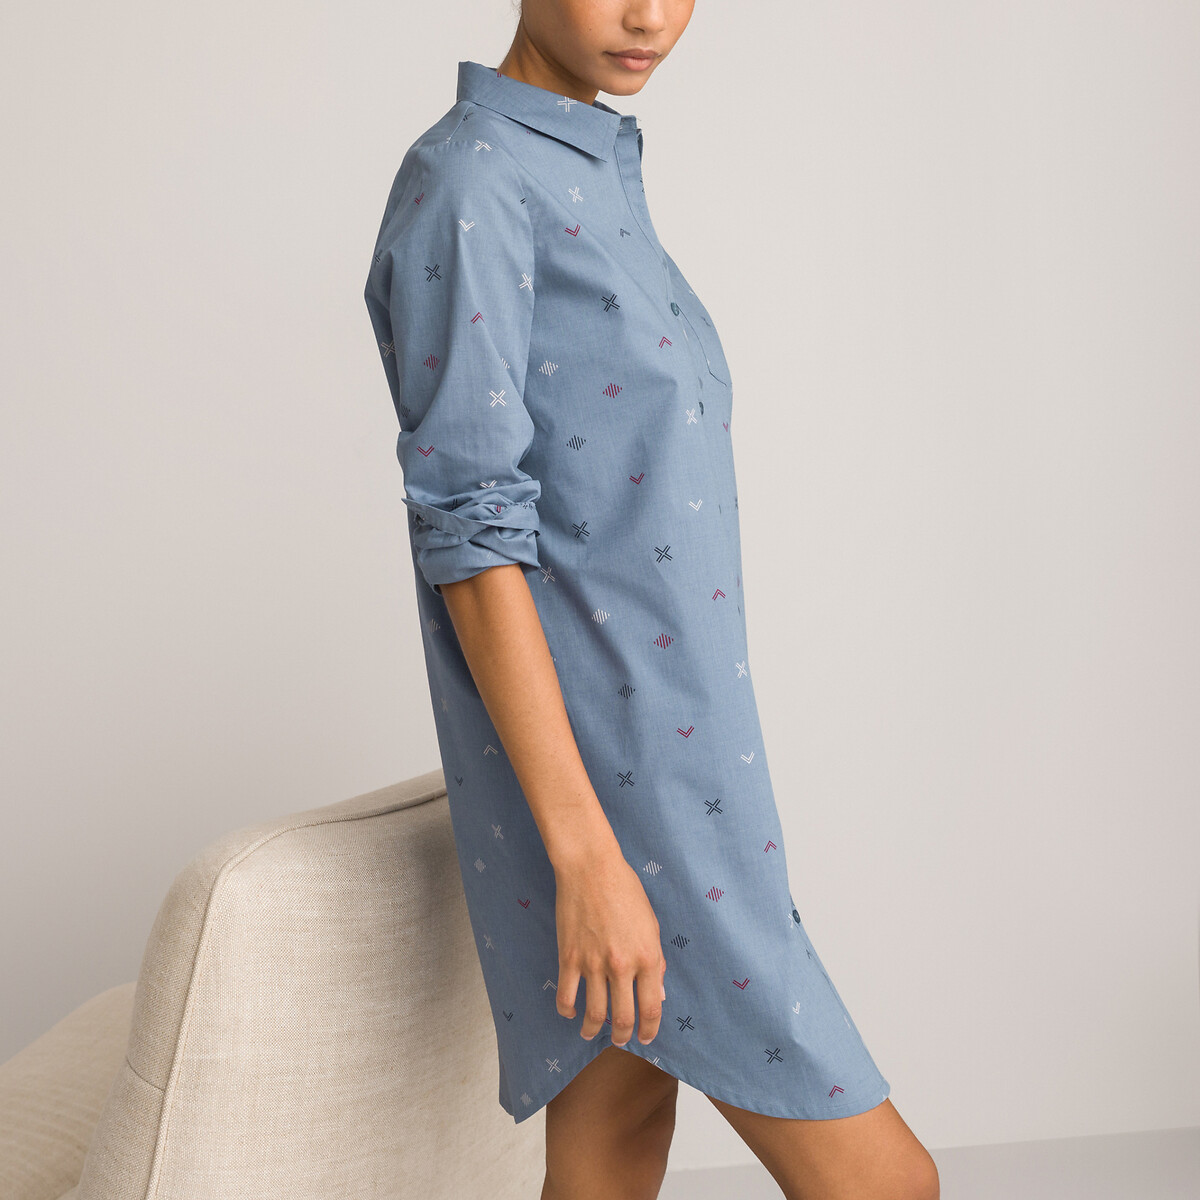 Рубашка Ночная из ткани шамбре с принтом 46 (FR) - 52 (RUS) синий